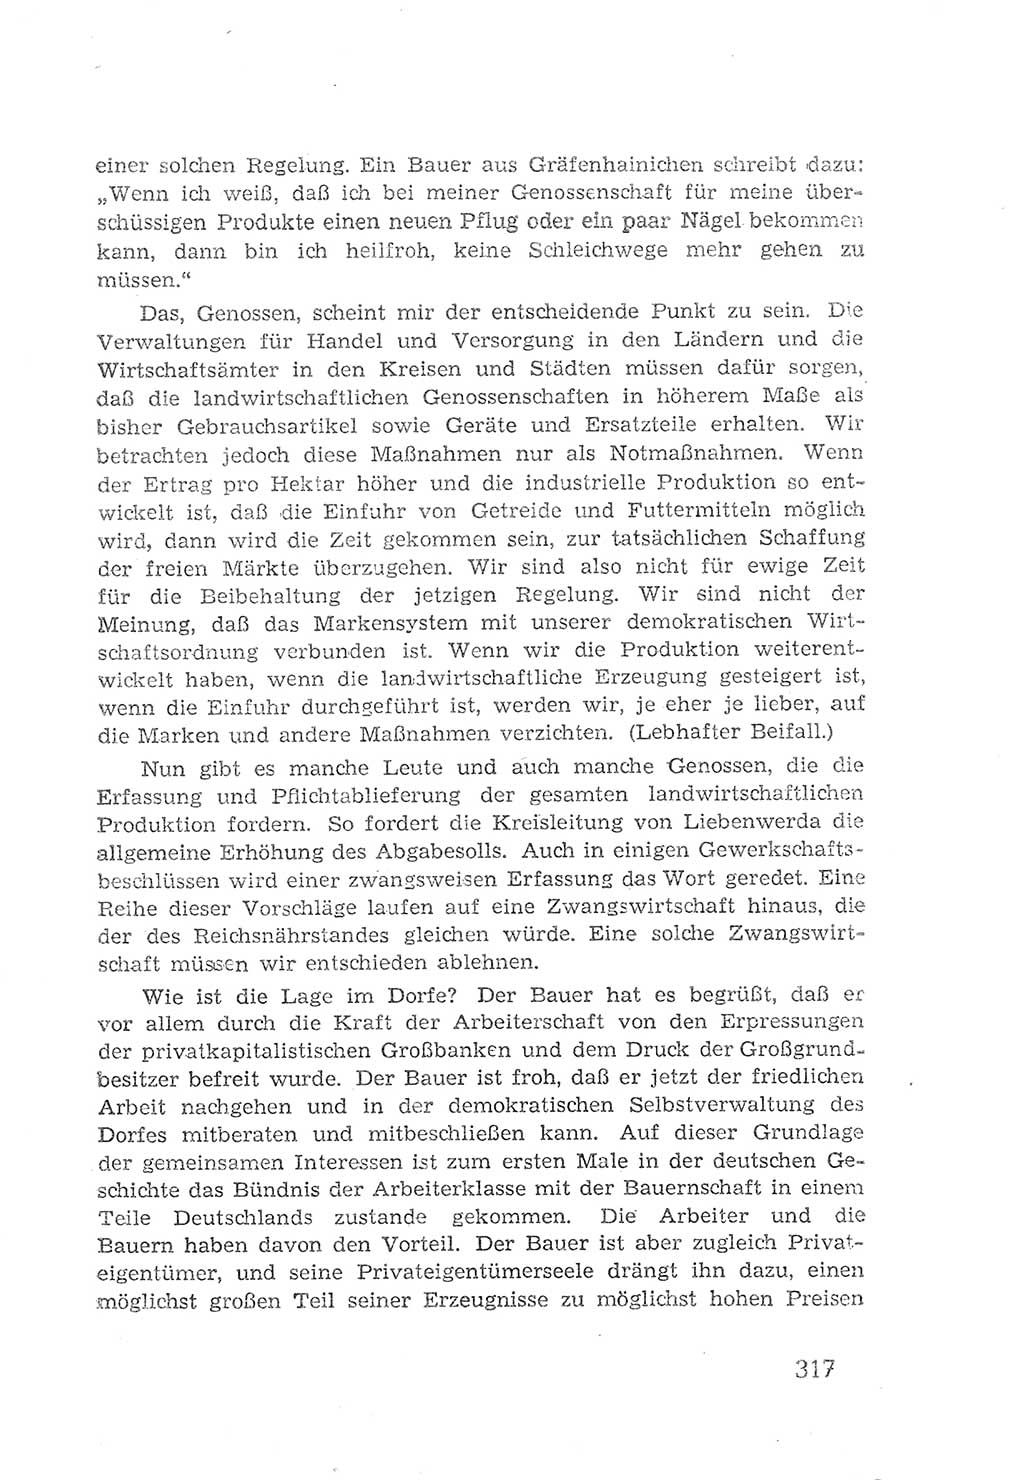 Protokoll der Verhandlungen des 2. Parteitages der Sozialistischen Einheitspartei Deutschlands (SED) [Sowjetische Besatzungszone (SBZ) Deutschlands] 1947, Seite 317 (Prot. Verh. 2. PT SED SBZ Dtl. 1947, S. 317)